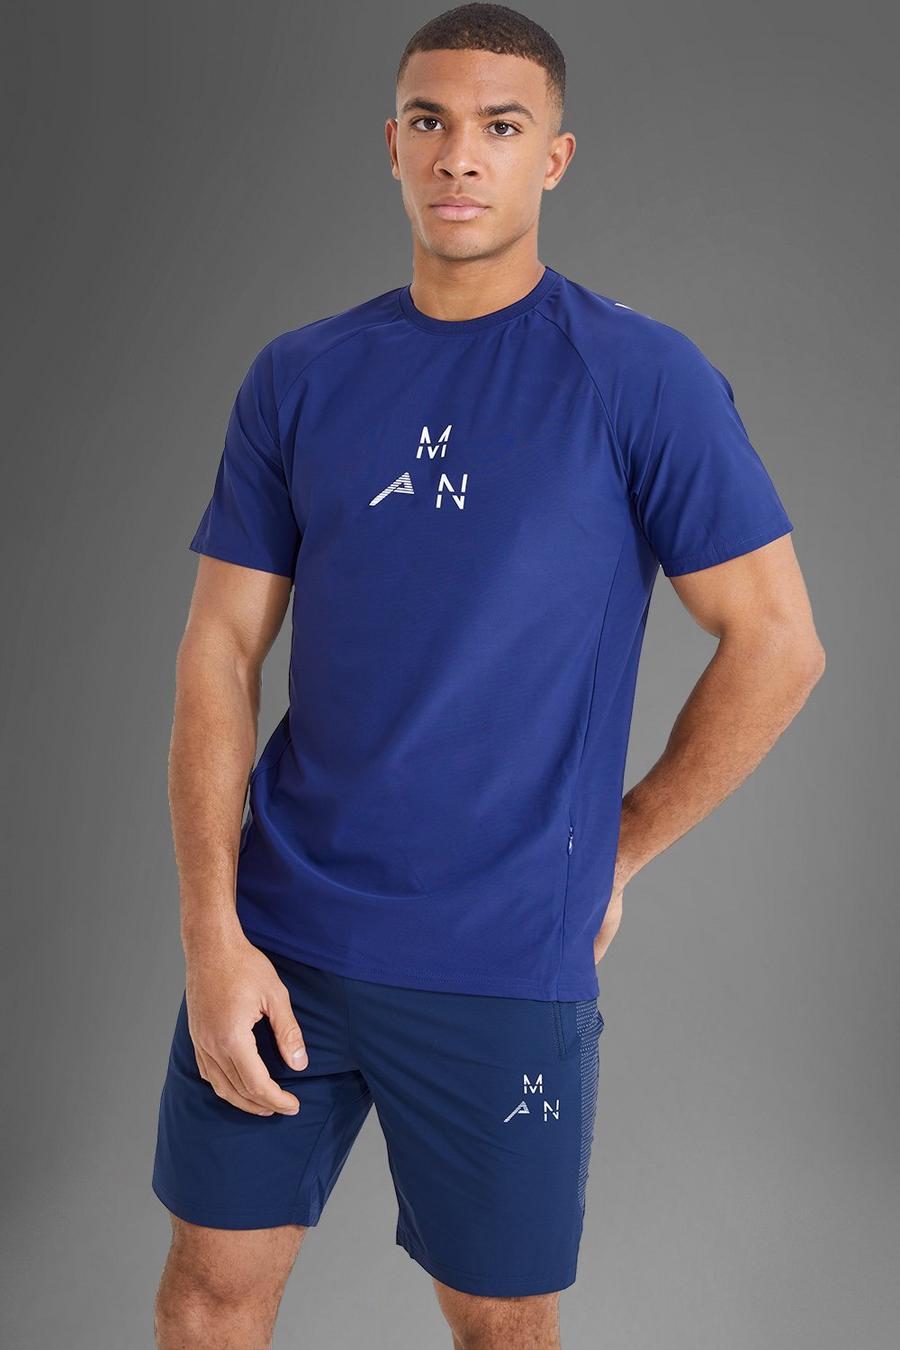 Camiseta MAN Active deportiva con logo reflectante, Navy azul marino